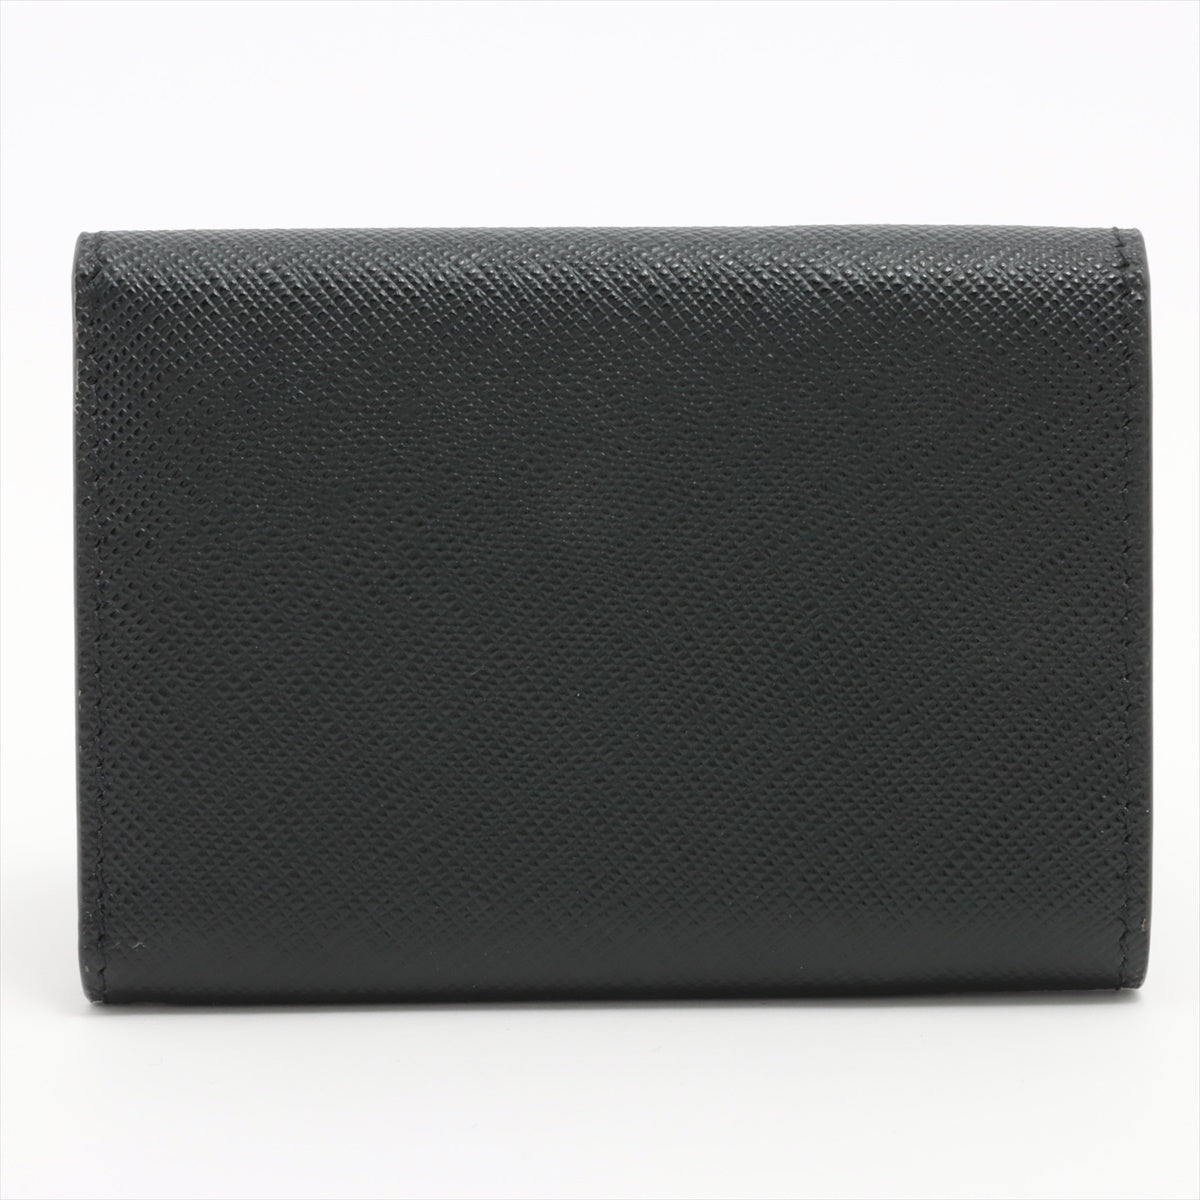 プラダ サフィアーノメタル 1MH021 レザー 財布 ブラック